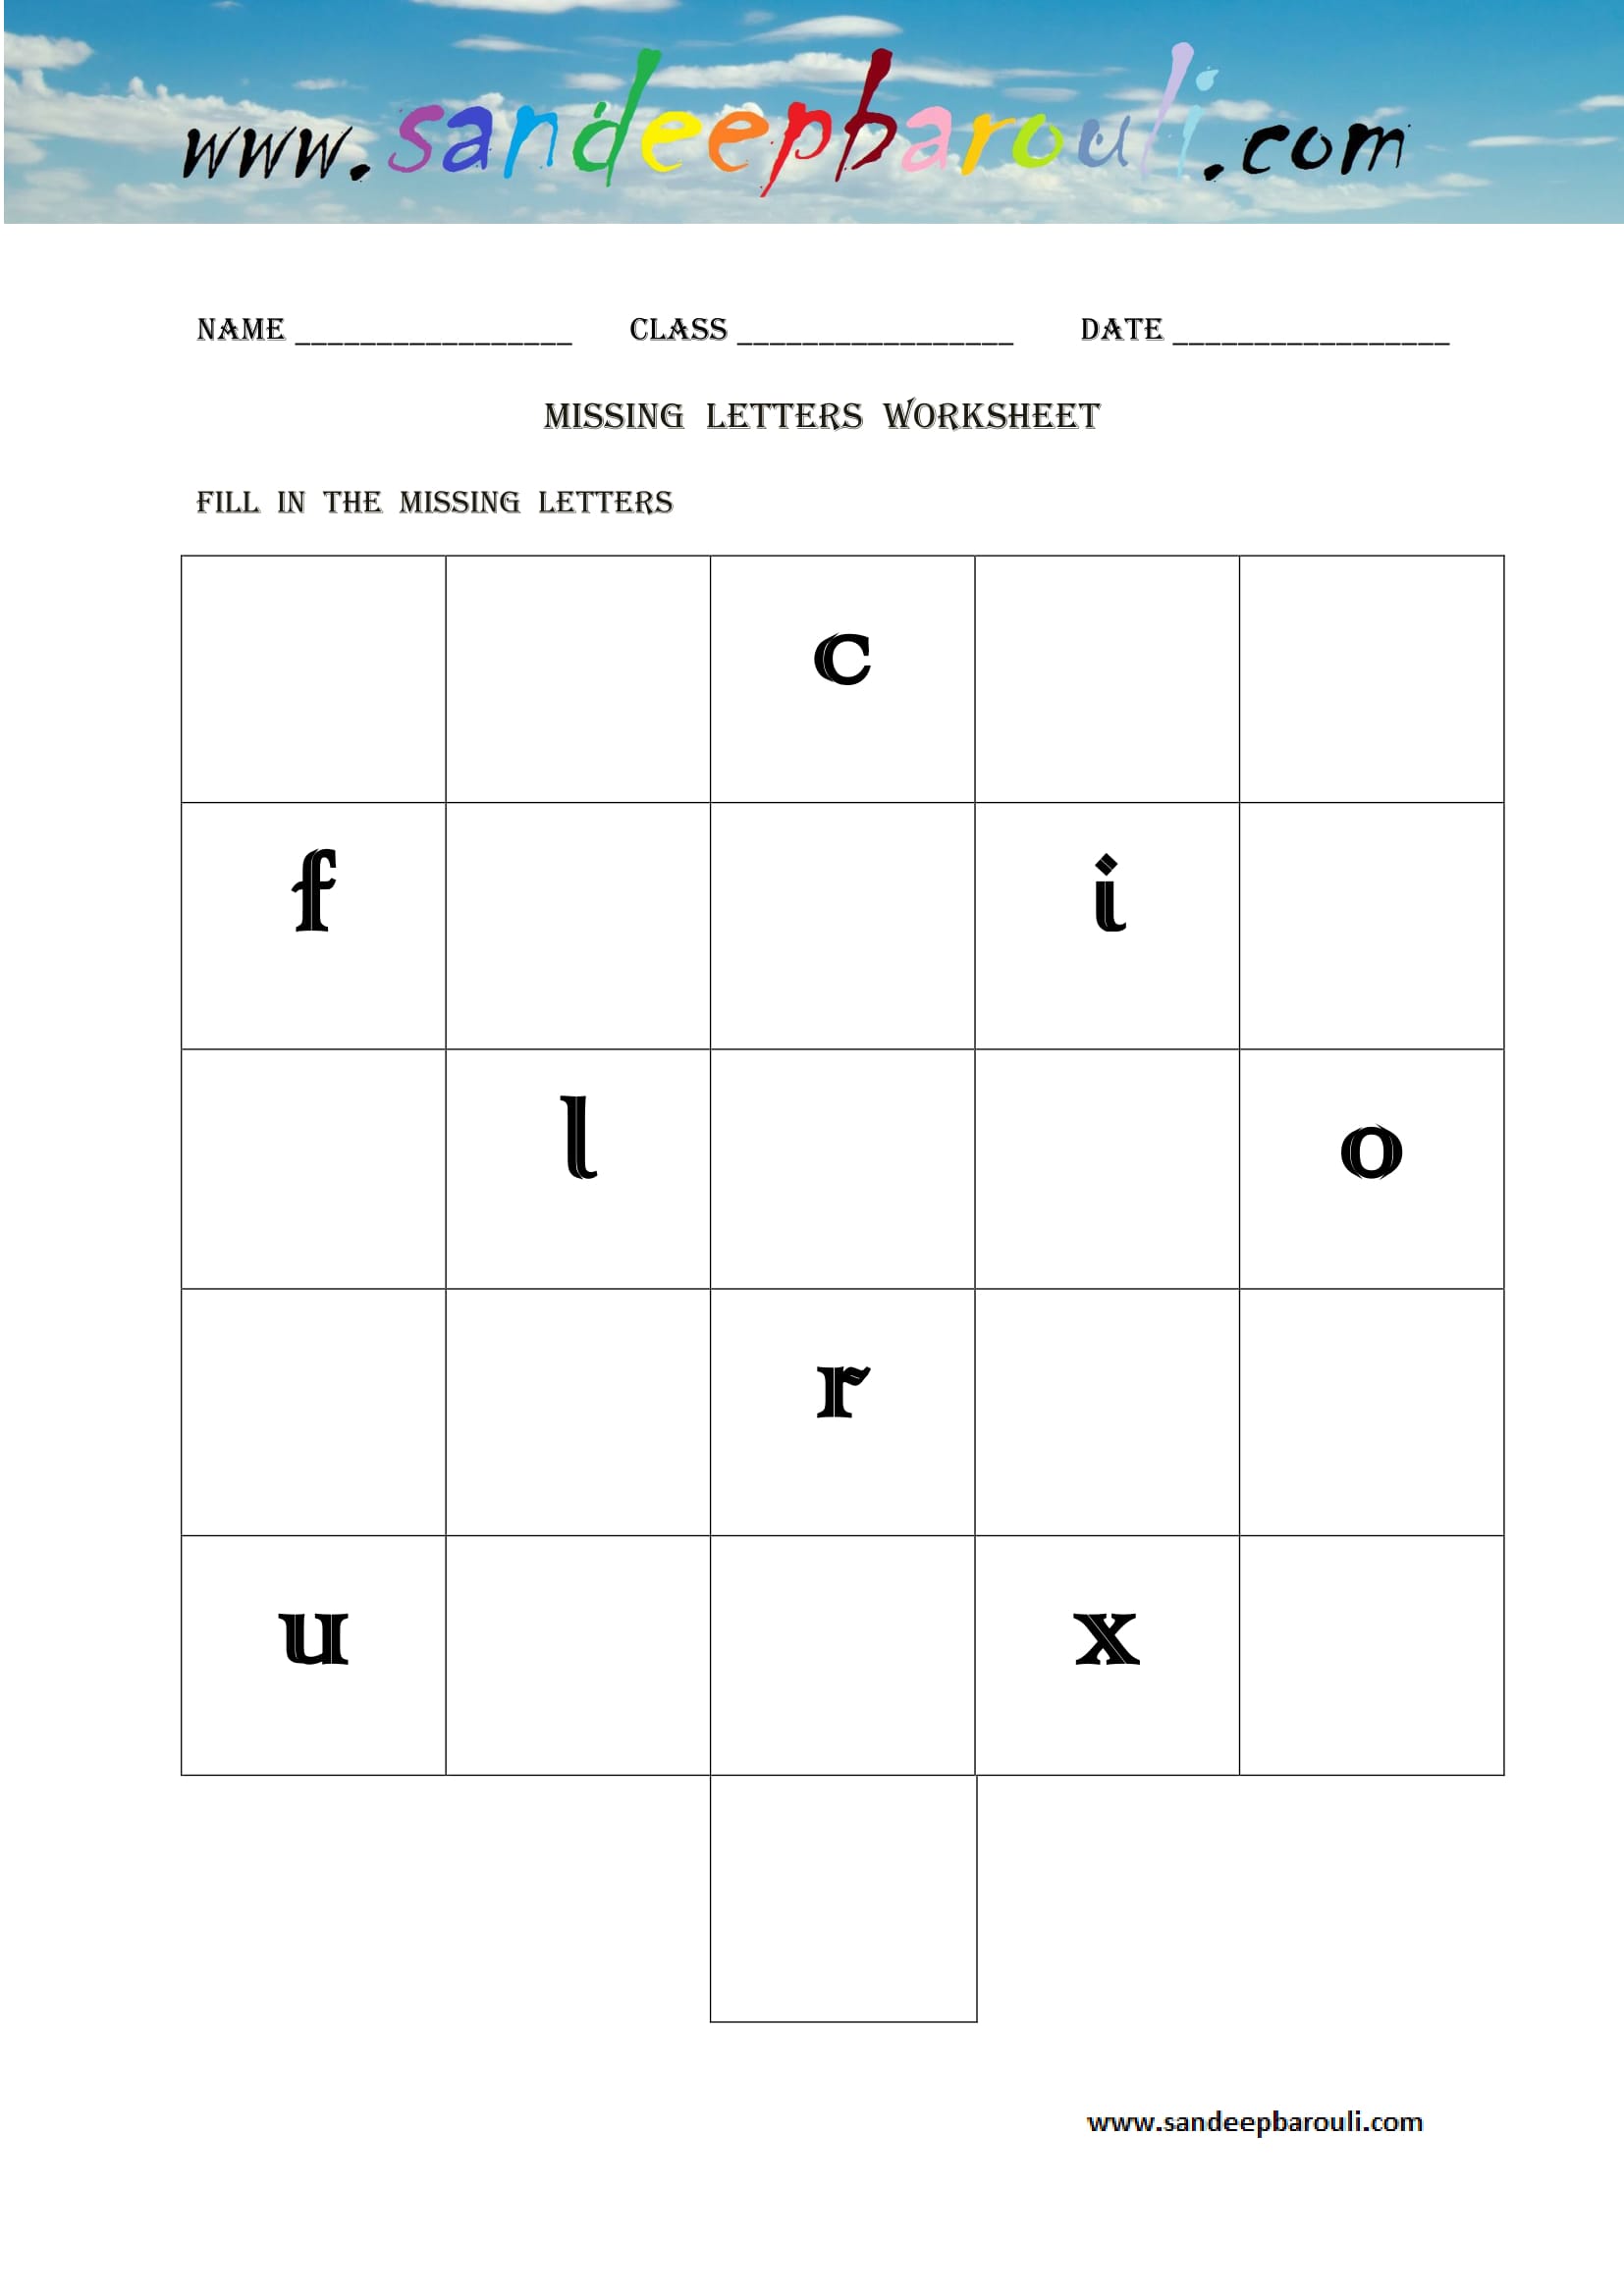 Missing letters Worksheet (5)